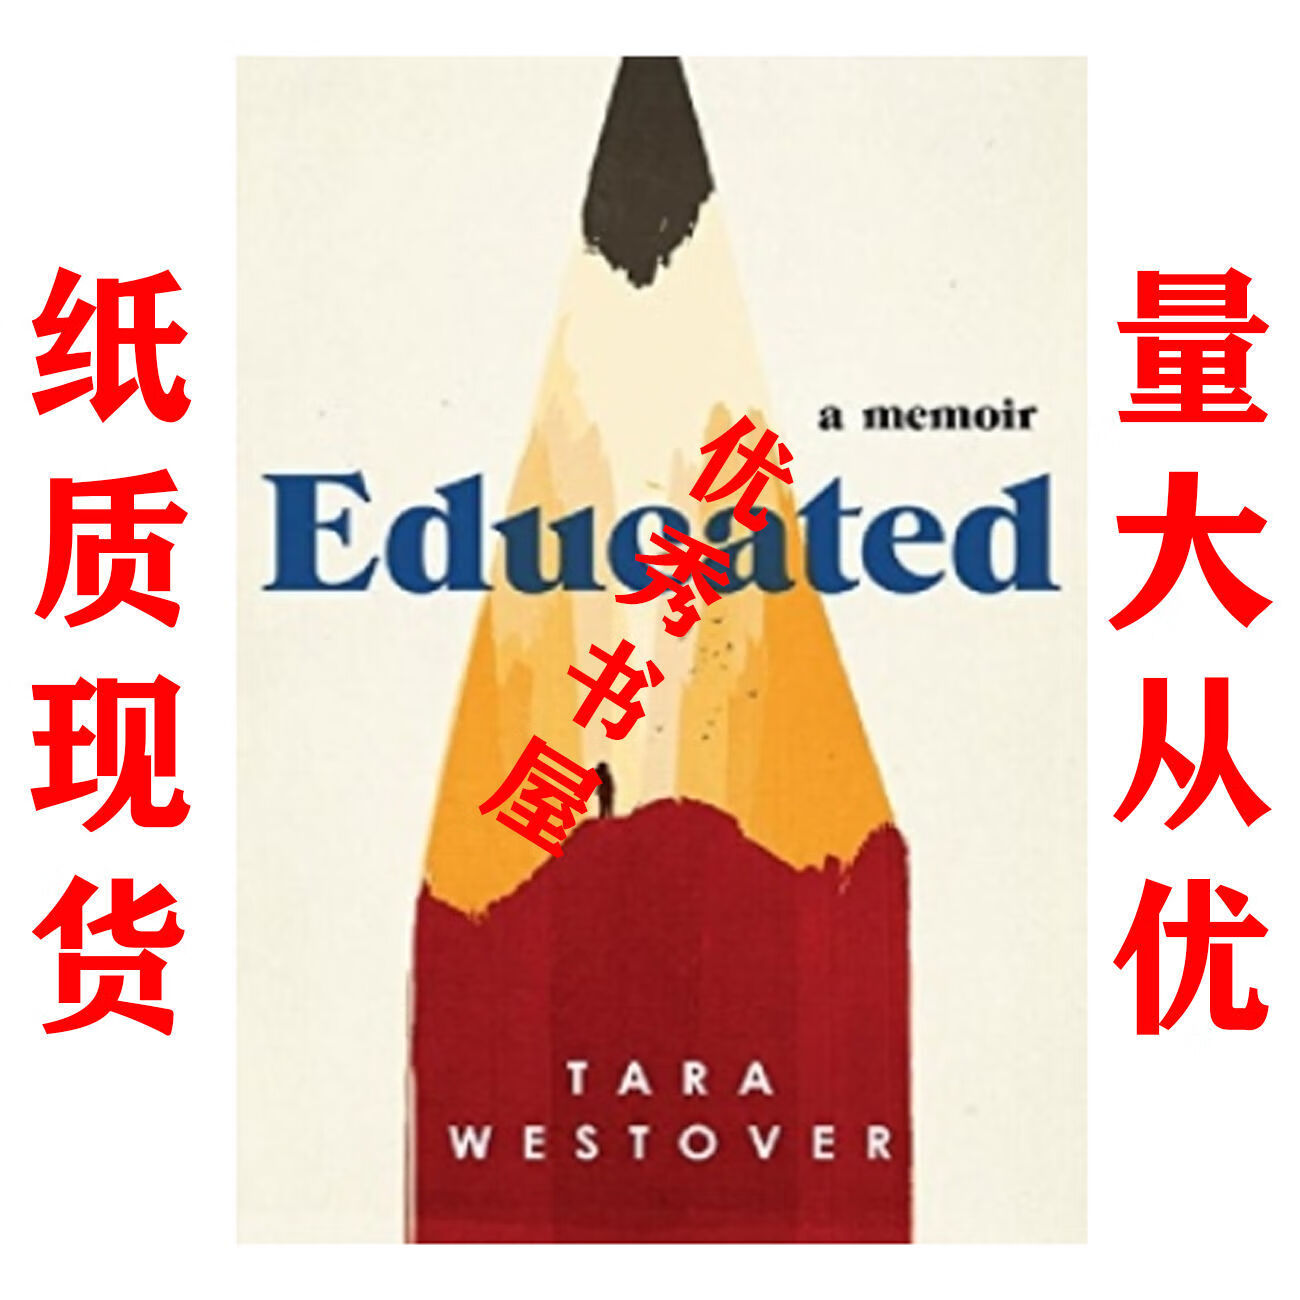 纸质现货Educated - Tara Westover